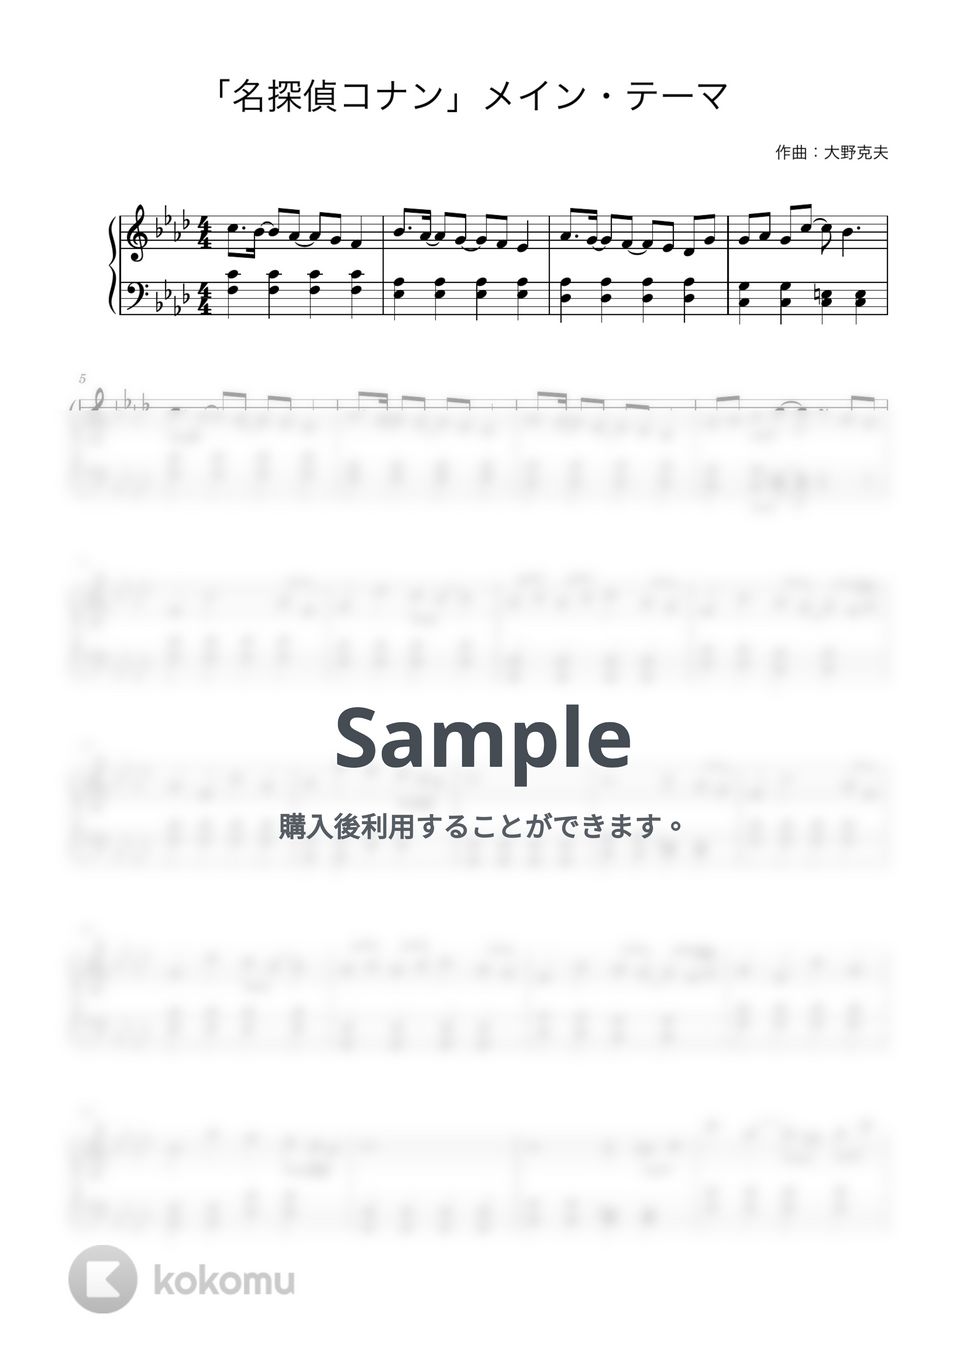 大野克夫 - 名探偵コナンのテーマ (ピアノ初心者向け / short ver.) by Piano Lovers. jp